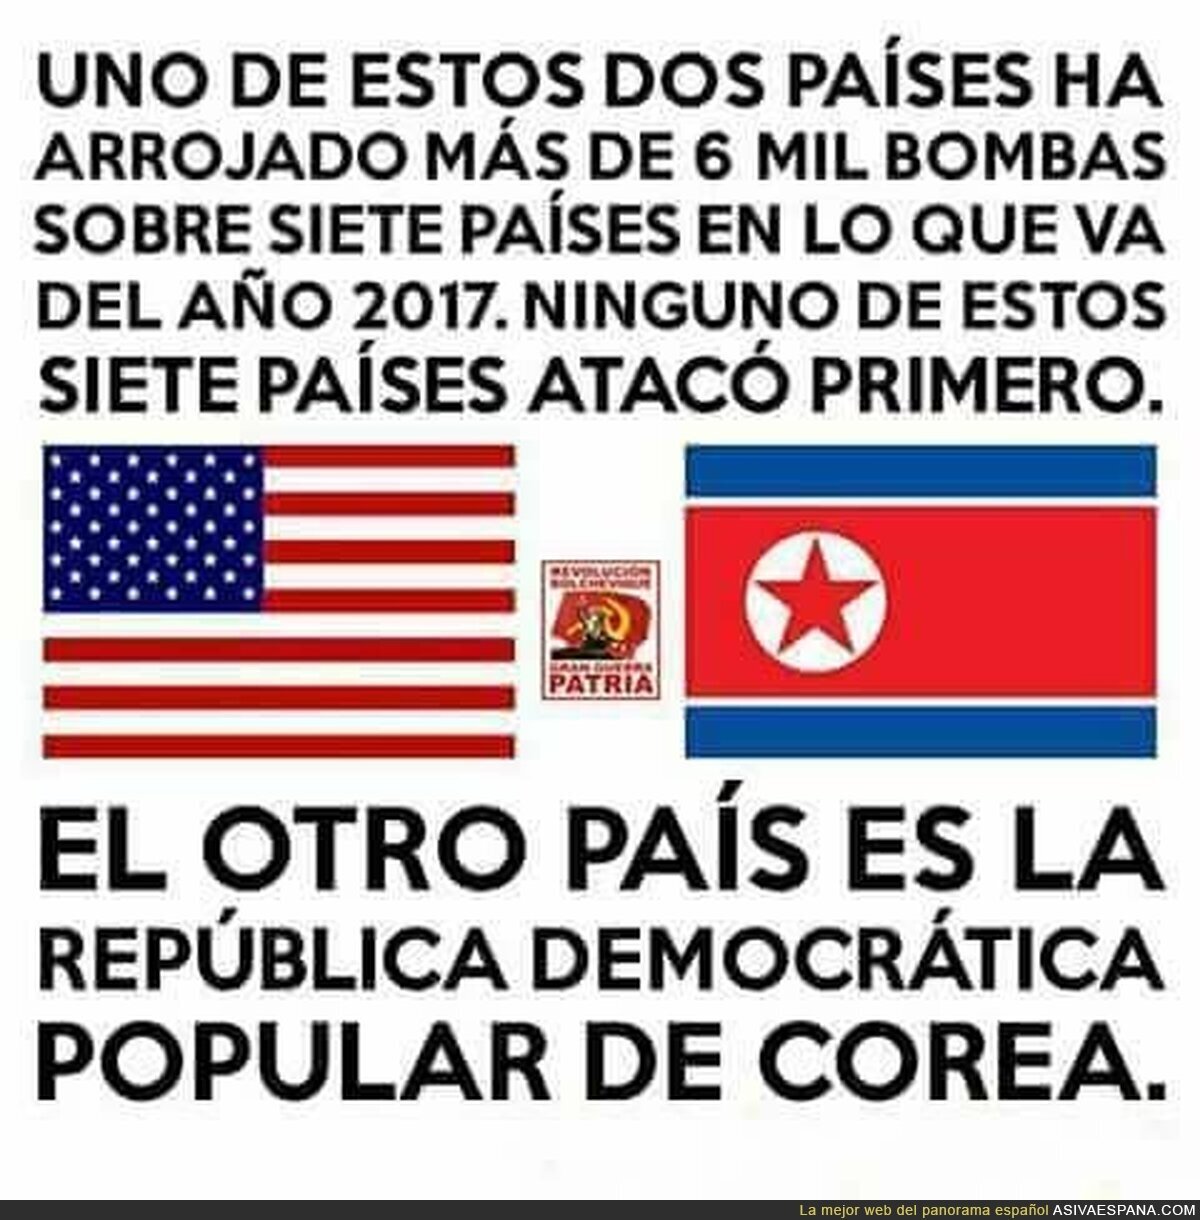 Vaya diferencia entre Estados Unidos y Corea del Norte